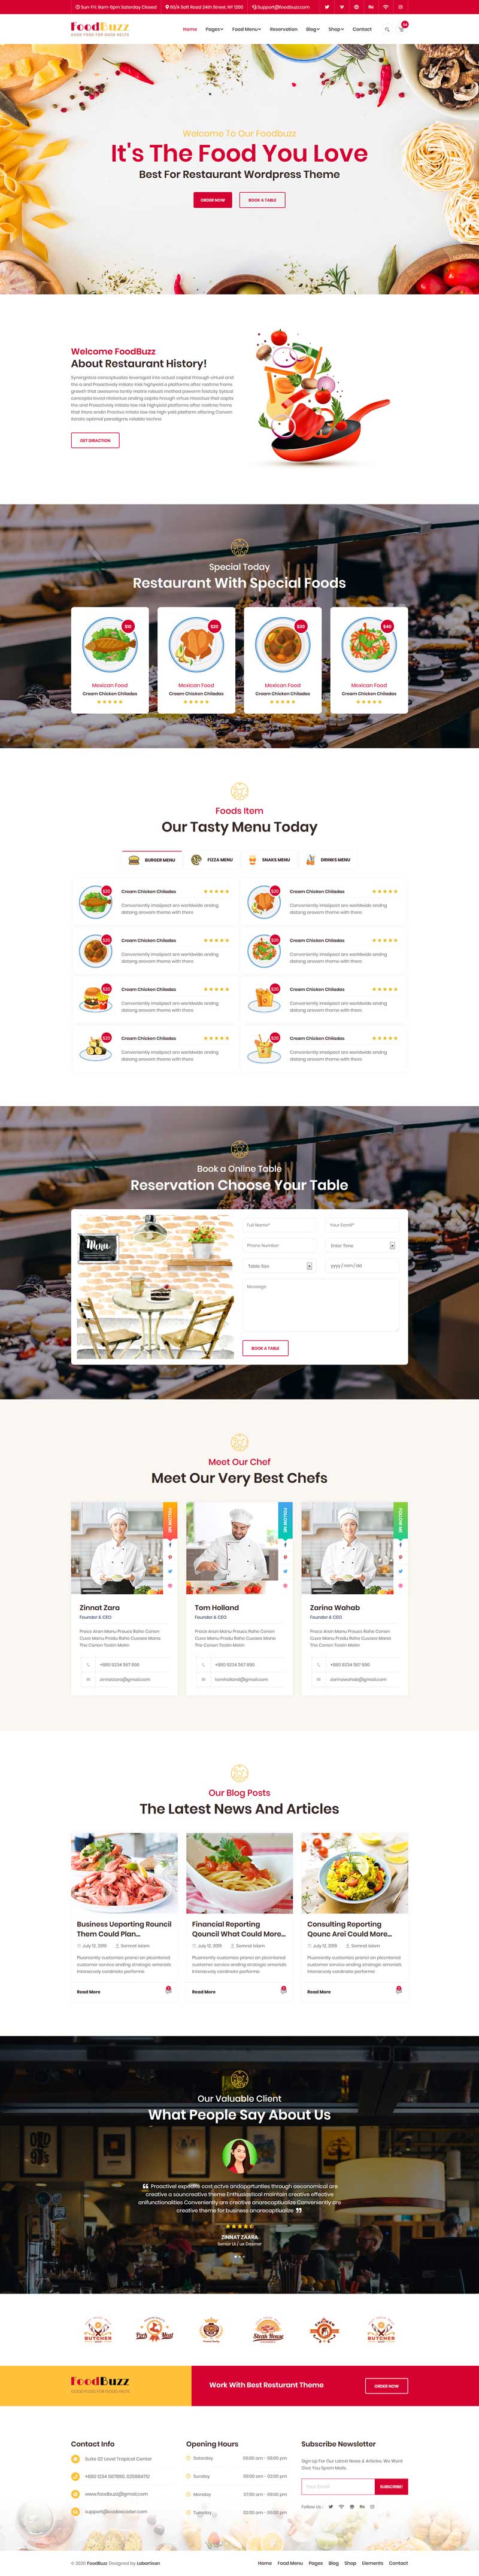 餐饮食品店铺外卖网站HTML模板